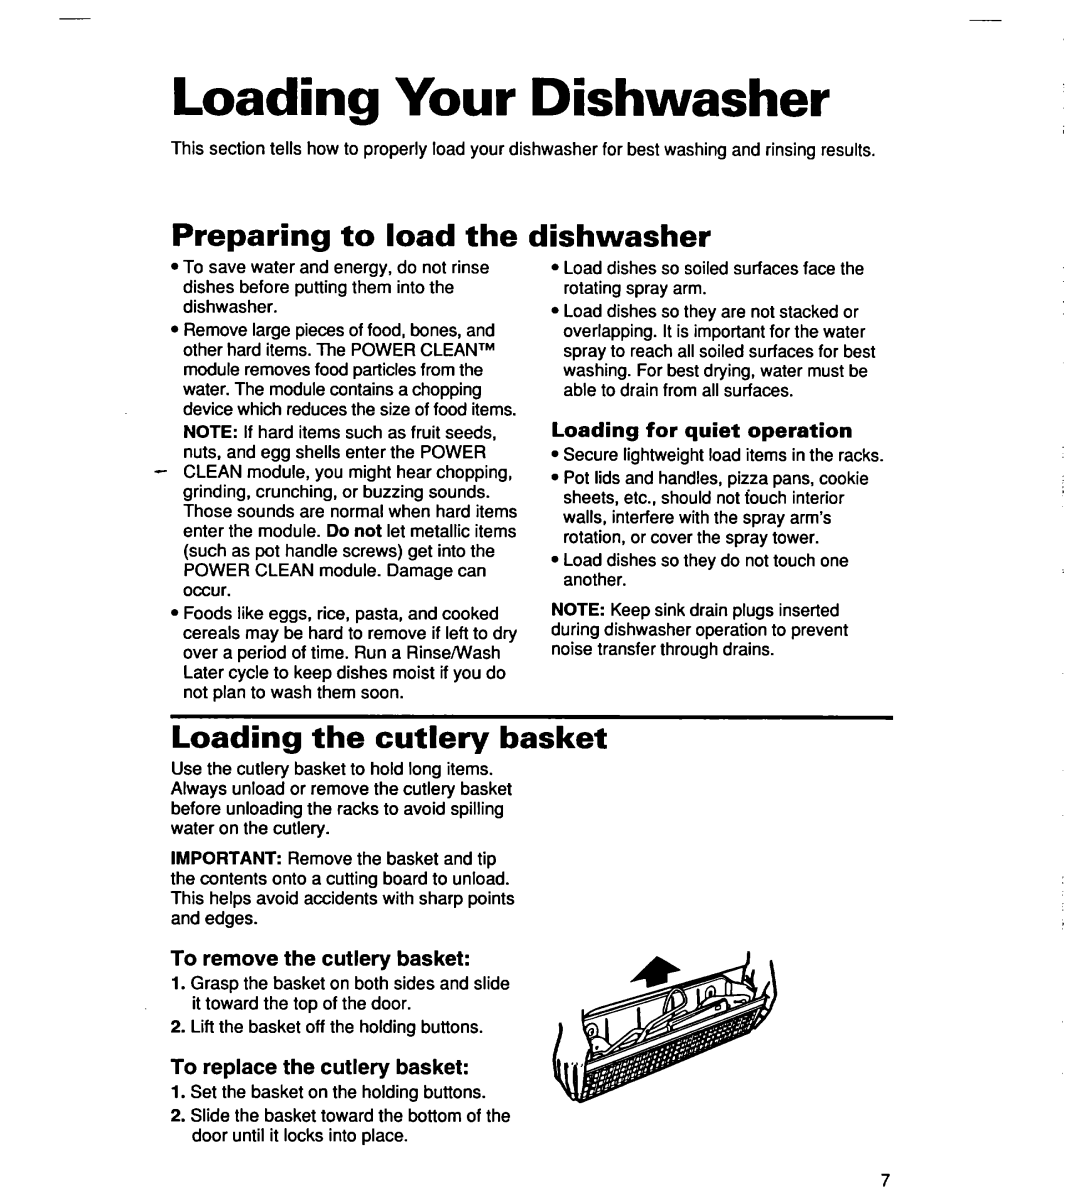 Whirlpool SERIES 940 warranty Loading Your Dishwasher, Preparing to load the, dishwasher, Loading the cutlery basket 